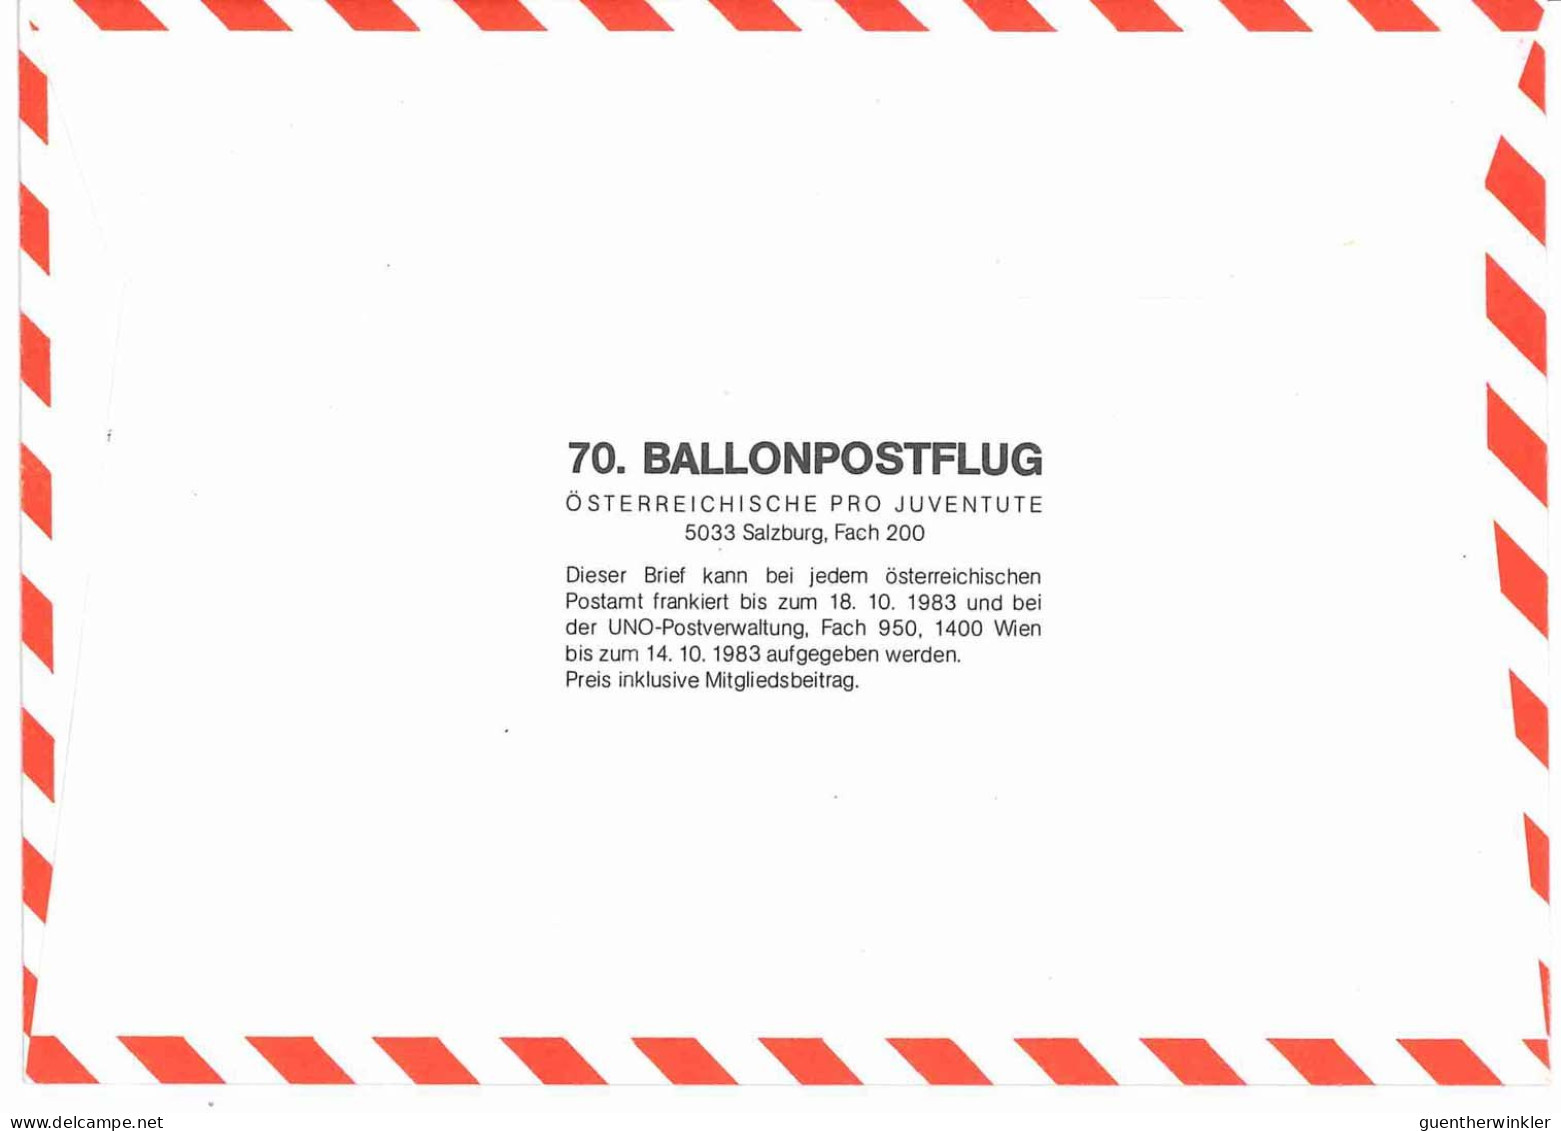 Regulärer Ballonpostflug Nr. 70a Der Pro Juventute [RBP70a] - Ballons